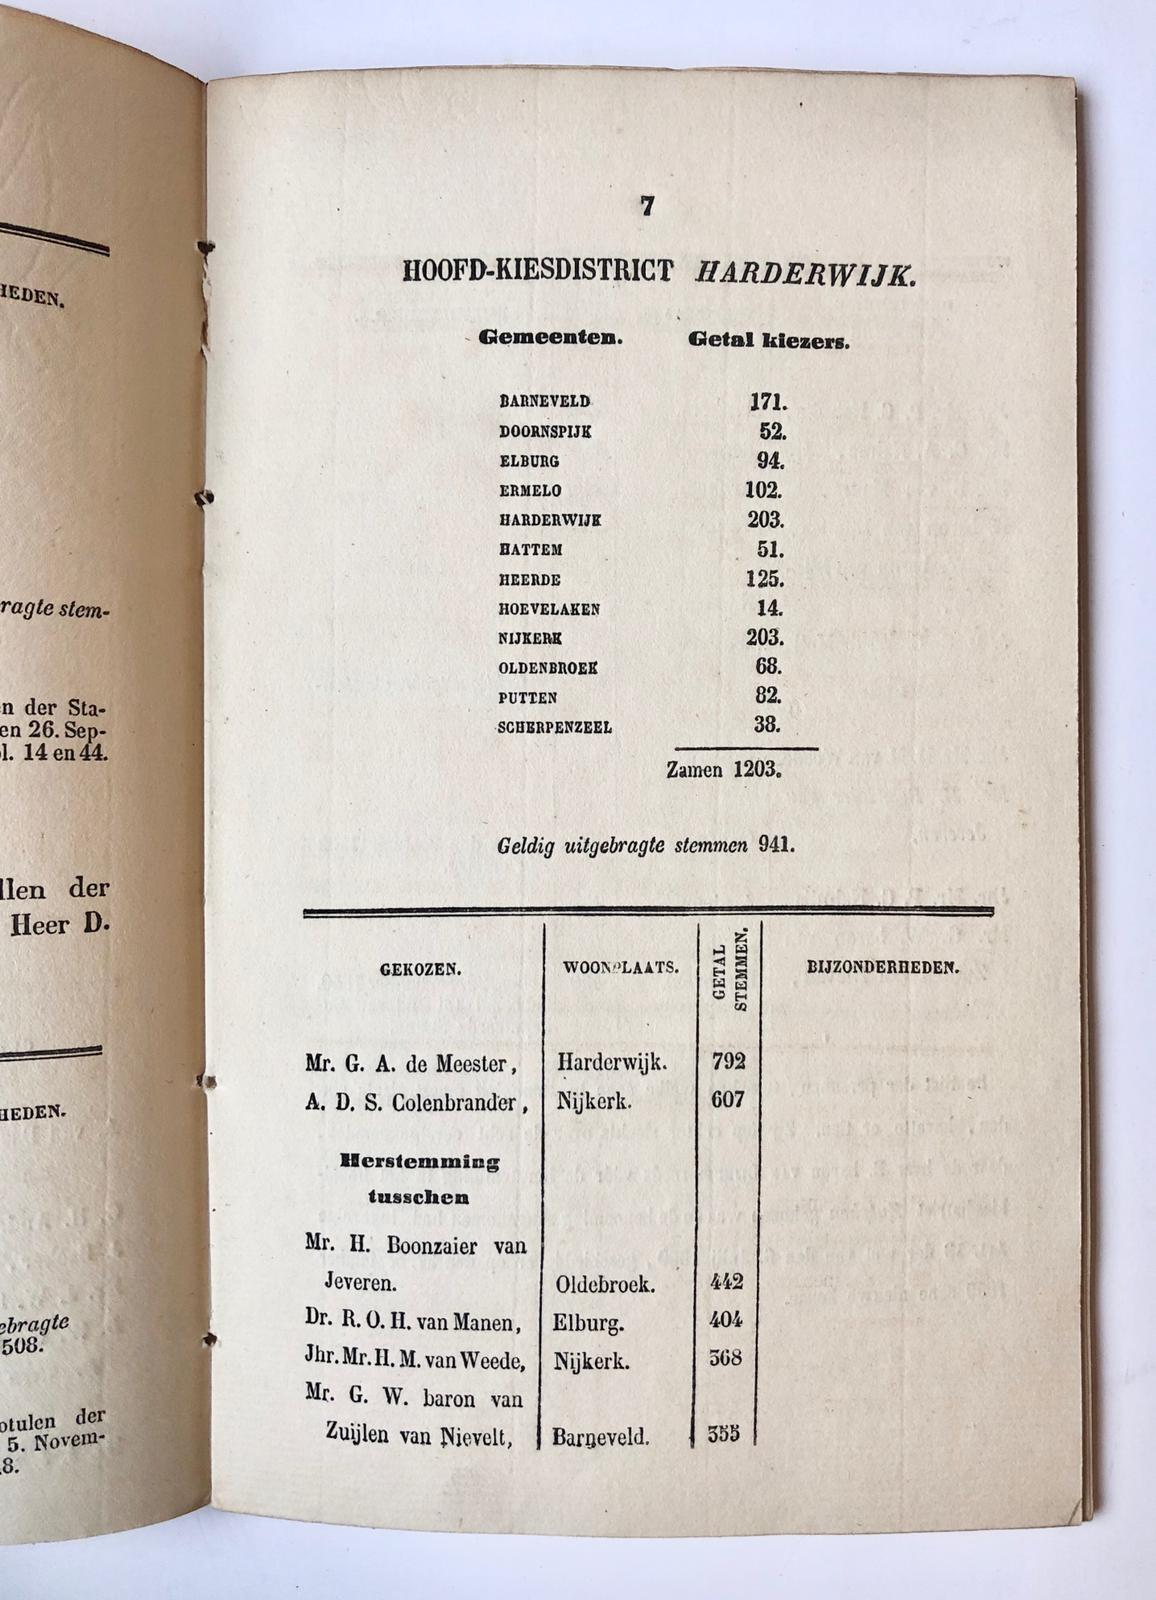 [Printed publication, Gelderland, Provinciale Staten 1850-1952] Overzigt van het personeel der Staten van Gelderland, sedert het invoeren der wet van 6-7-1850. Nijmegen 1852, 42 pag. Gedrukt.